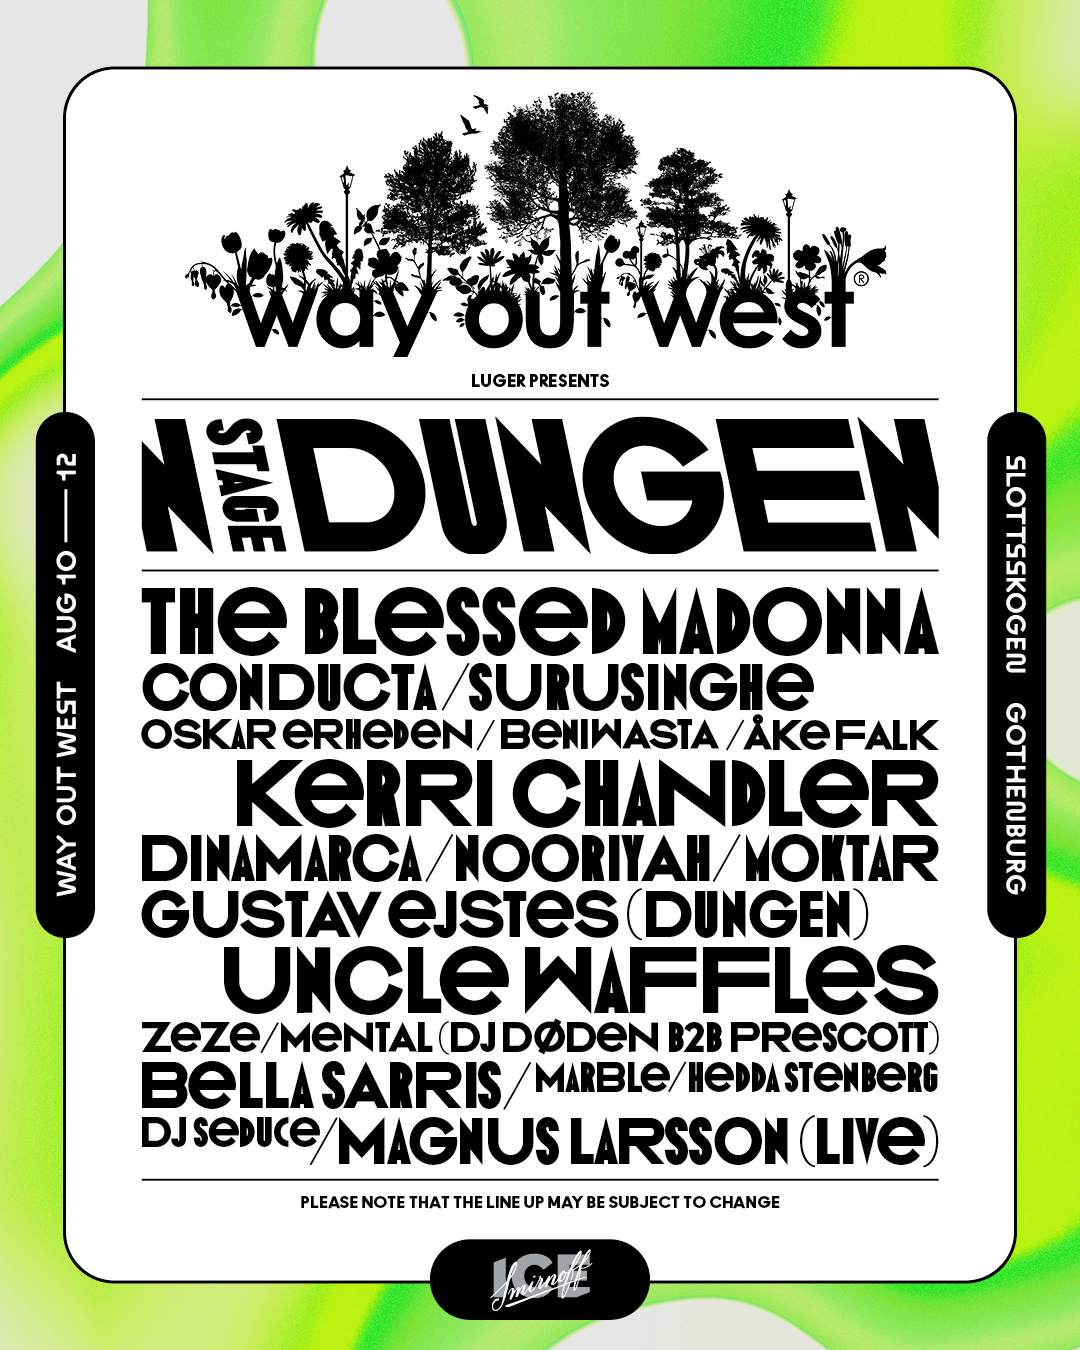 Dungen – Way Out West 2023 at Slottsskogen, Gothenburg